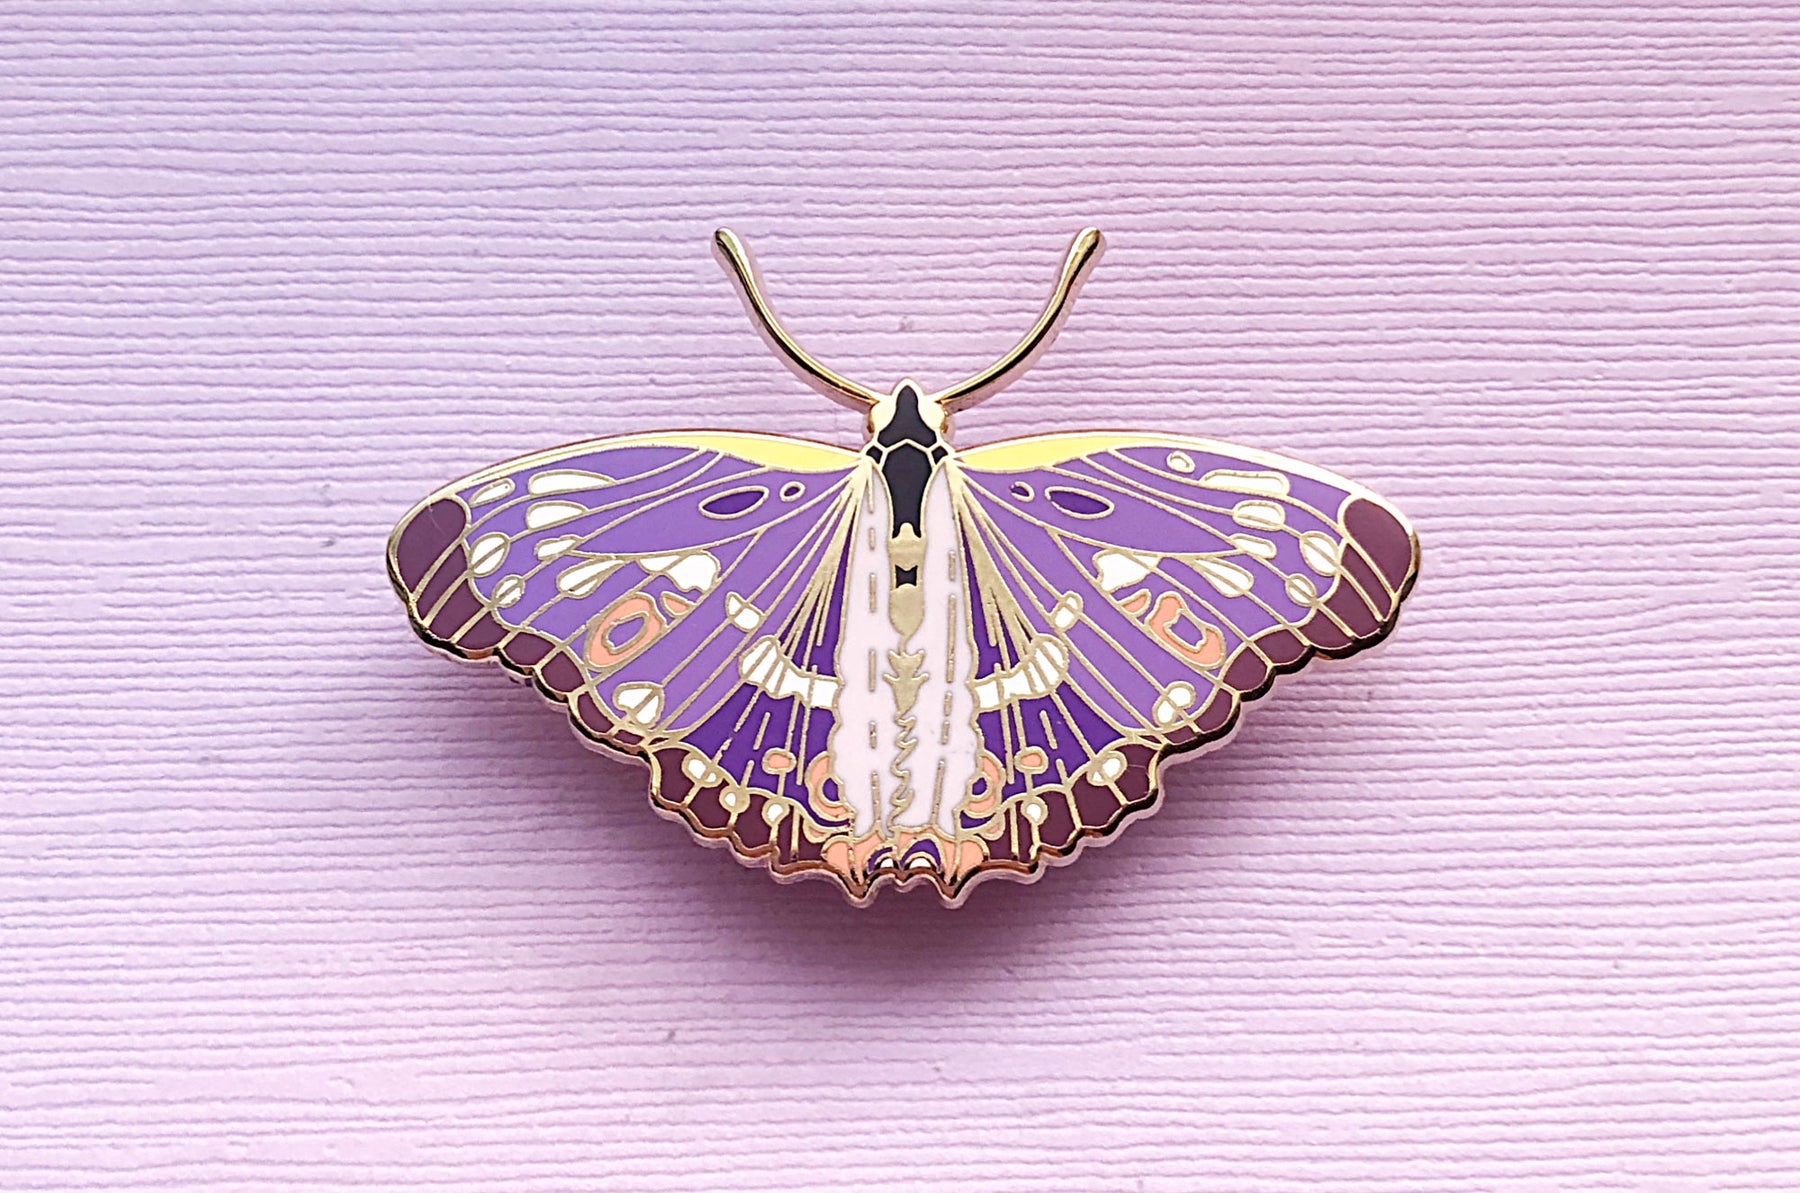 lesser purple emperor butterfly